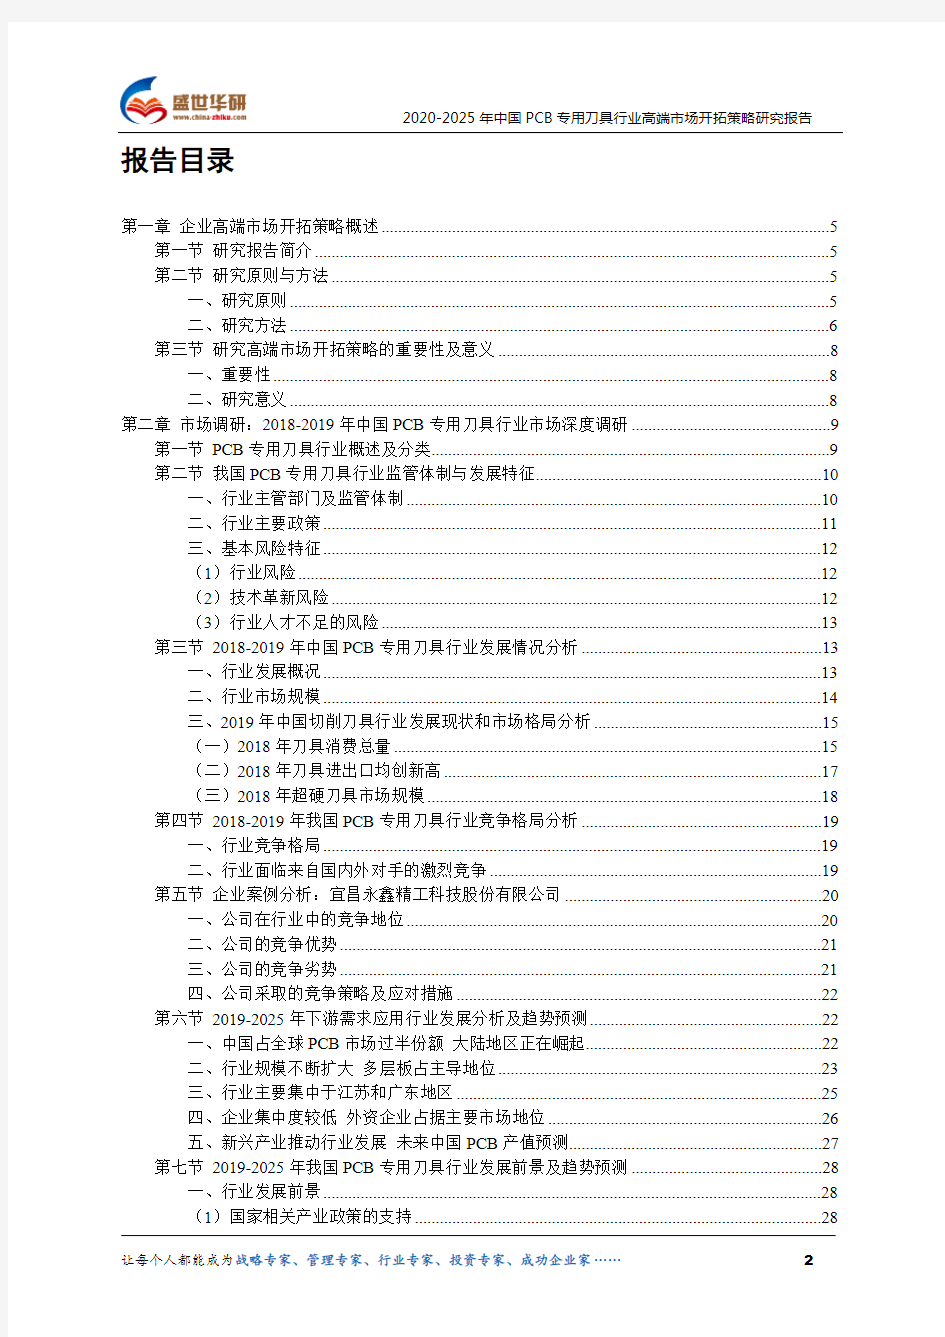 【完整版】2020-2025年中国PCB专用刀具行业高端市场开拓策略研究报告